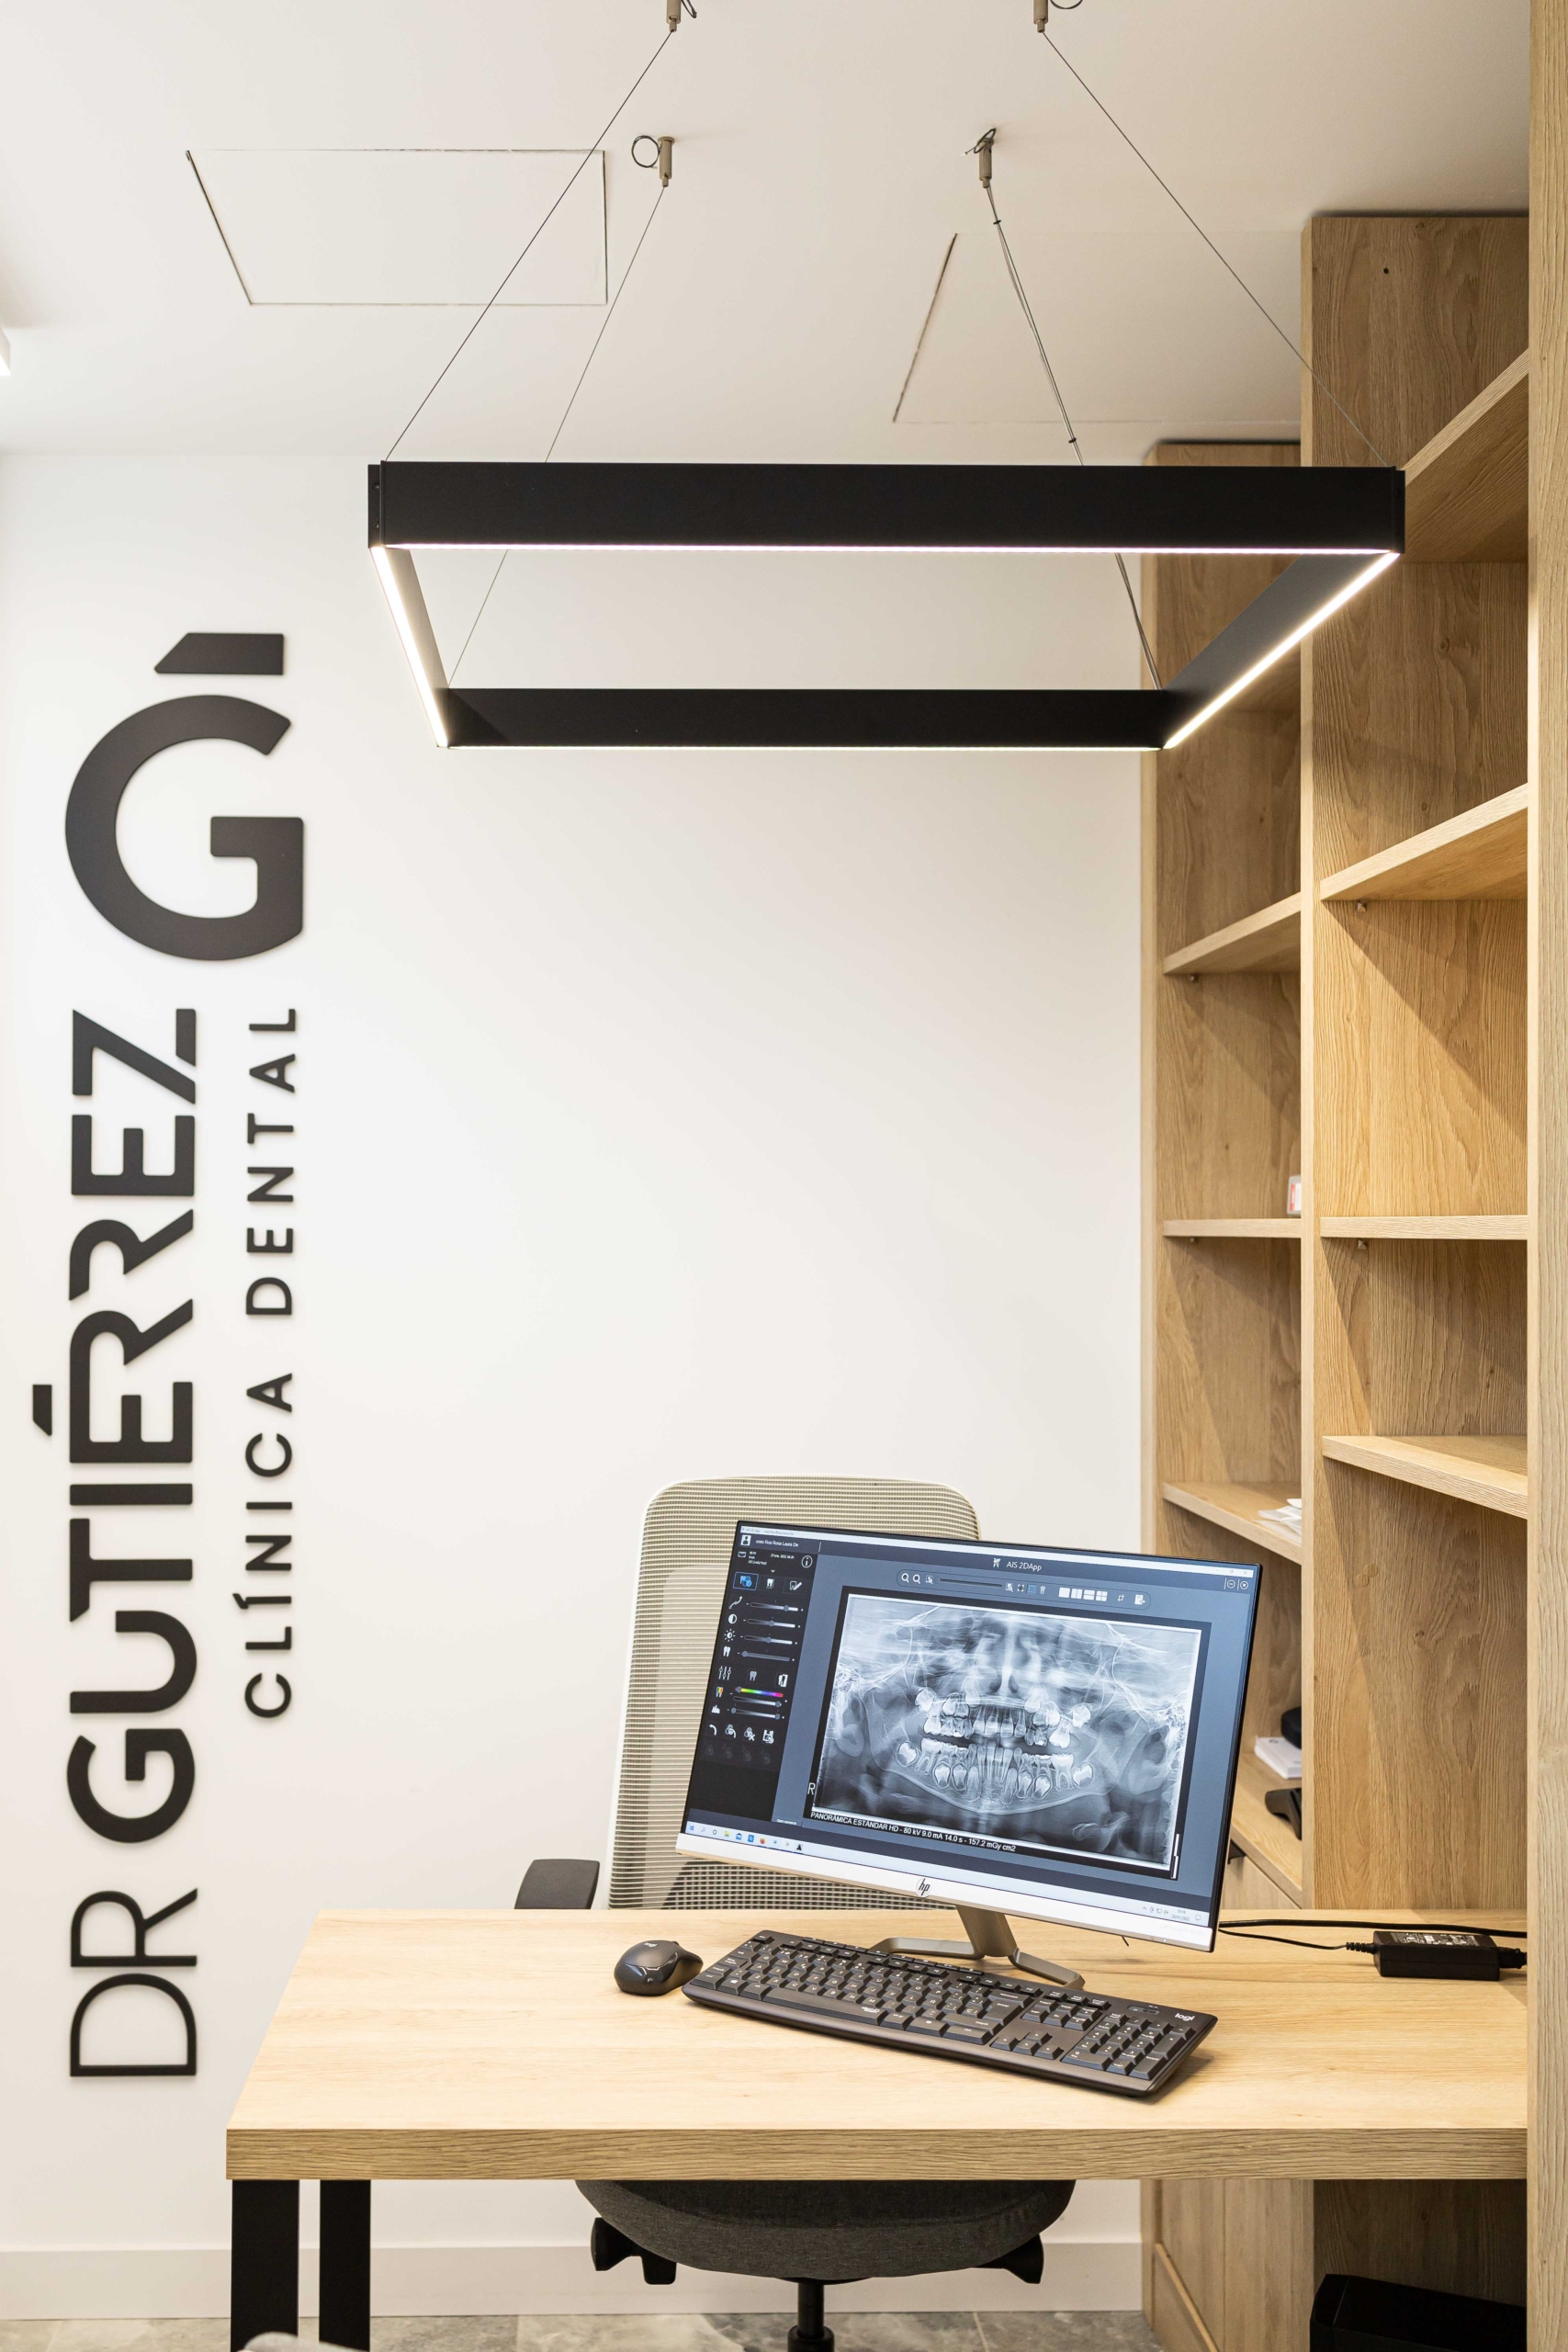 Sala de reuniones con acabado en madera y con ordenador y diseño logo con nombre ¨Dr Gutierrez¨